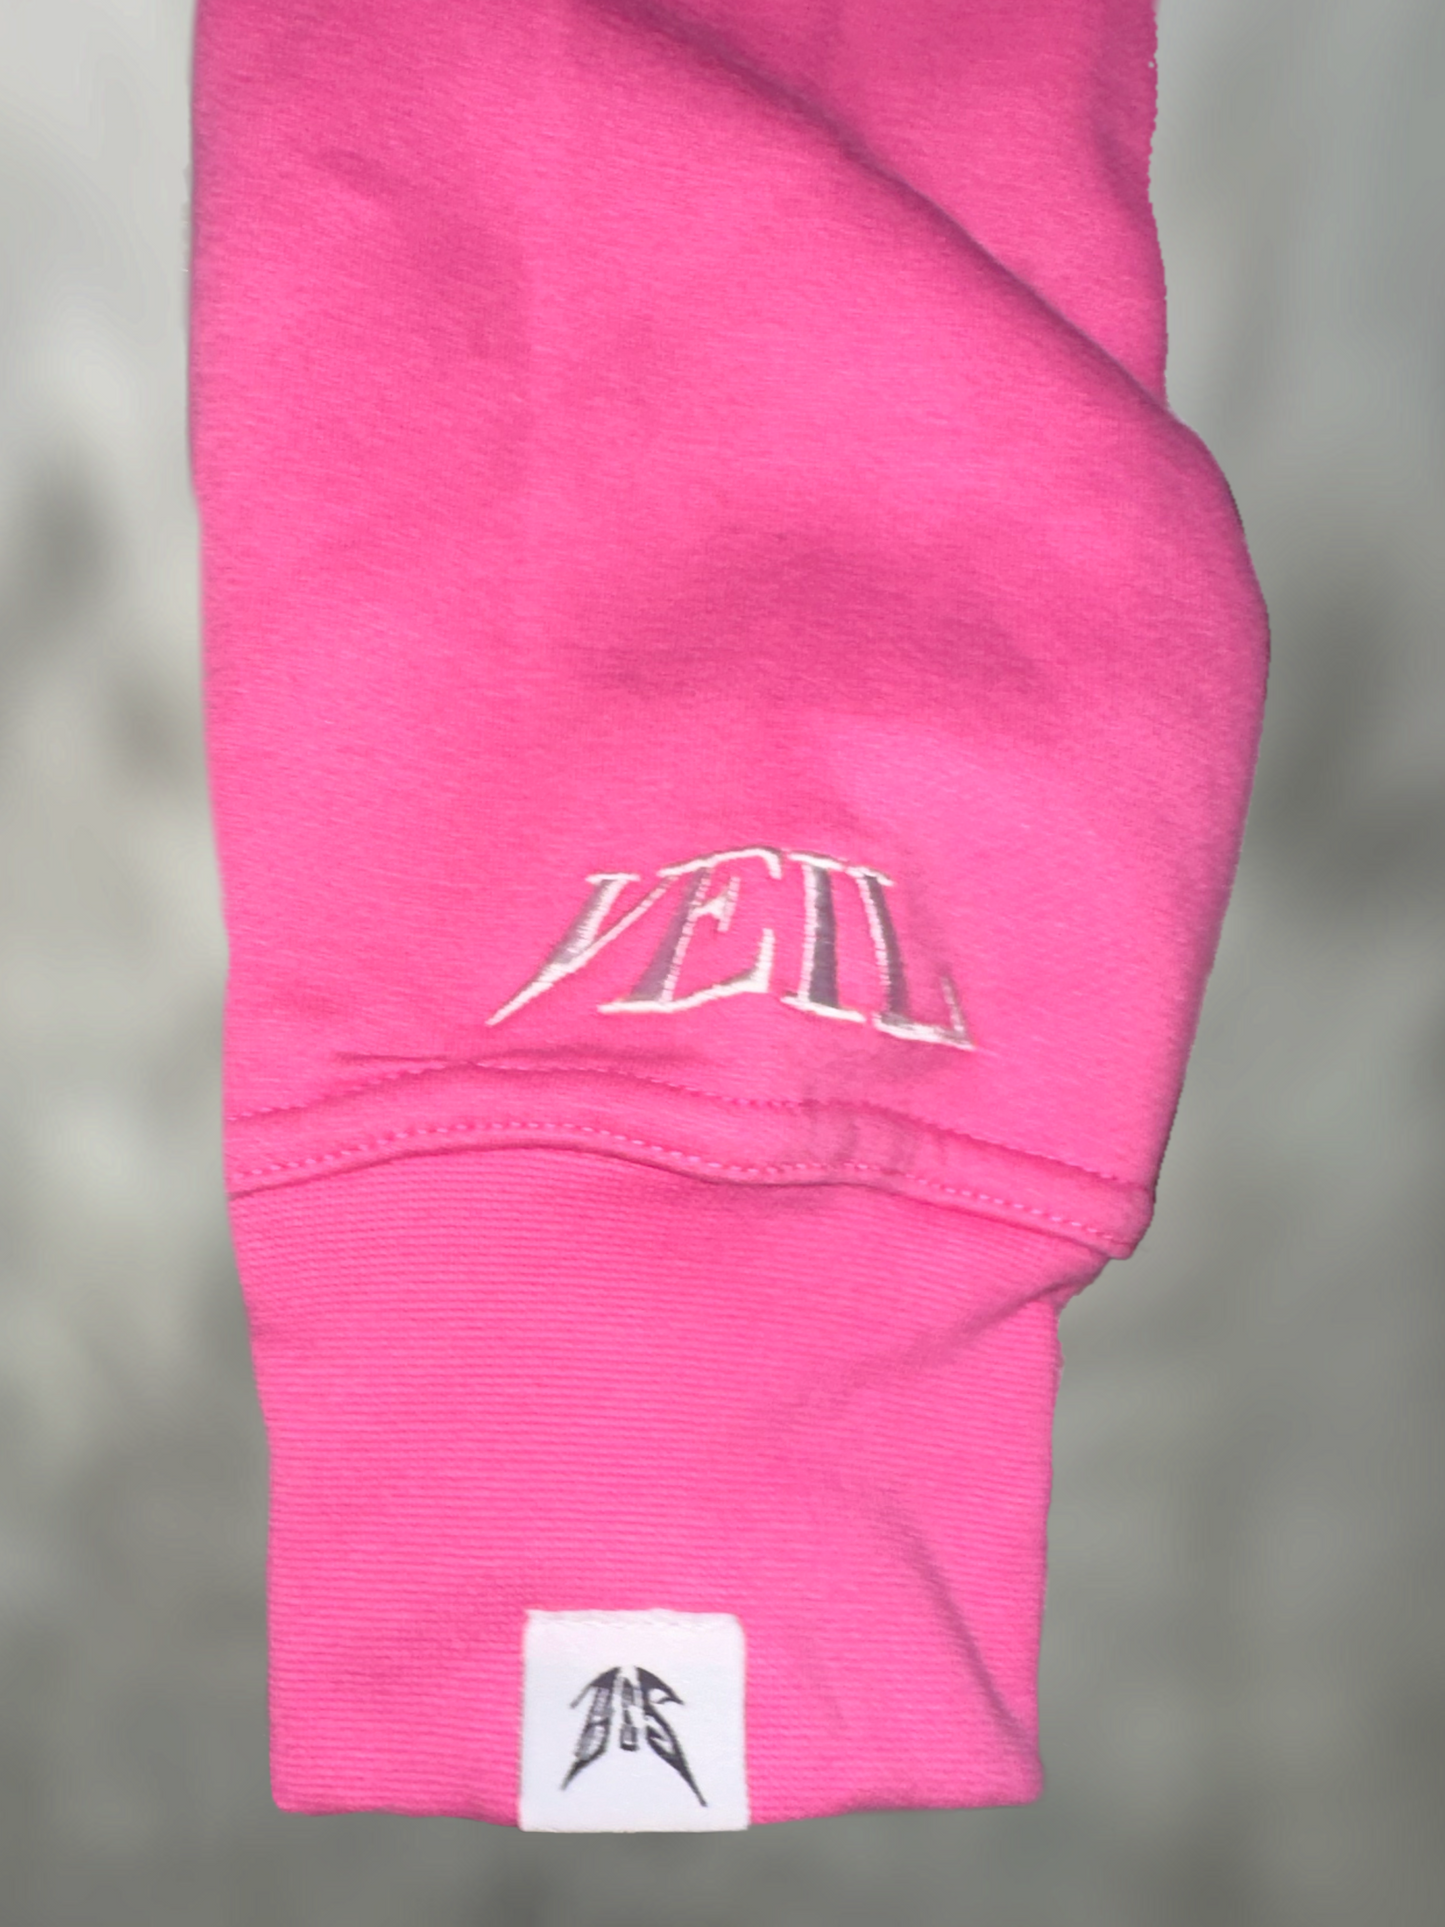 “S&S”/MYSTIC VEIL Zip-Up Jacket (Pink)